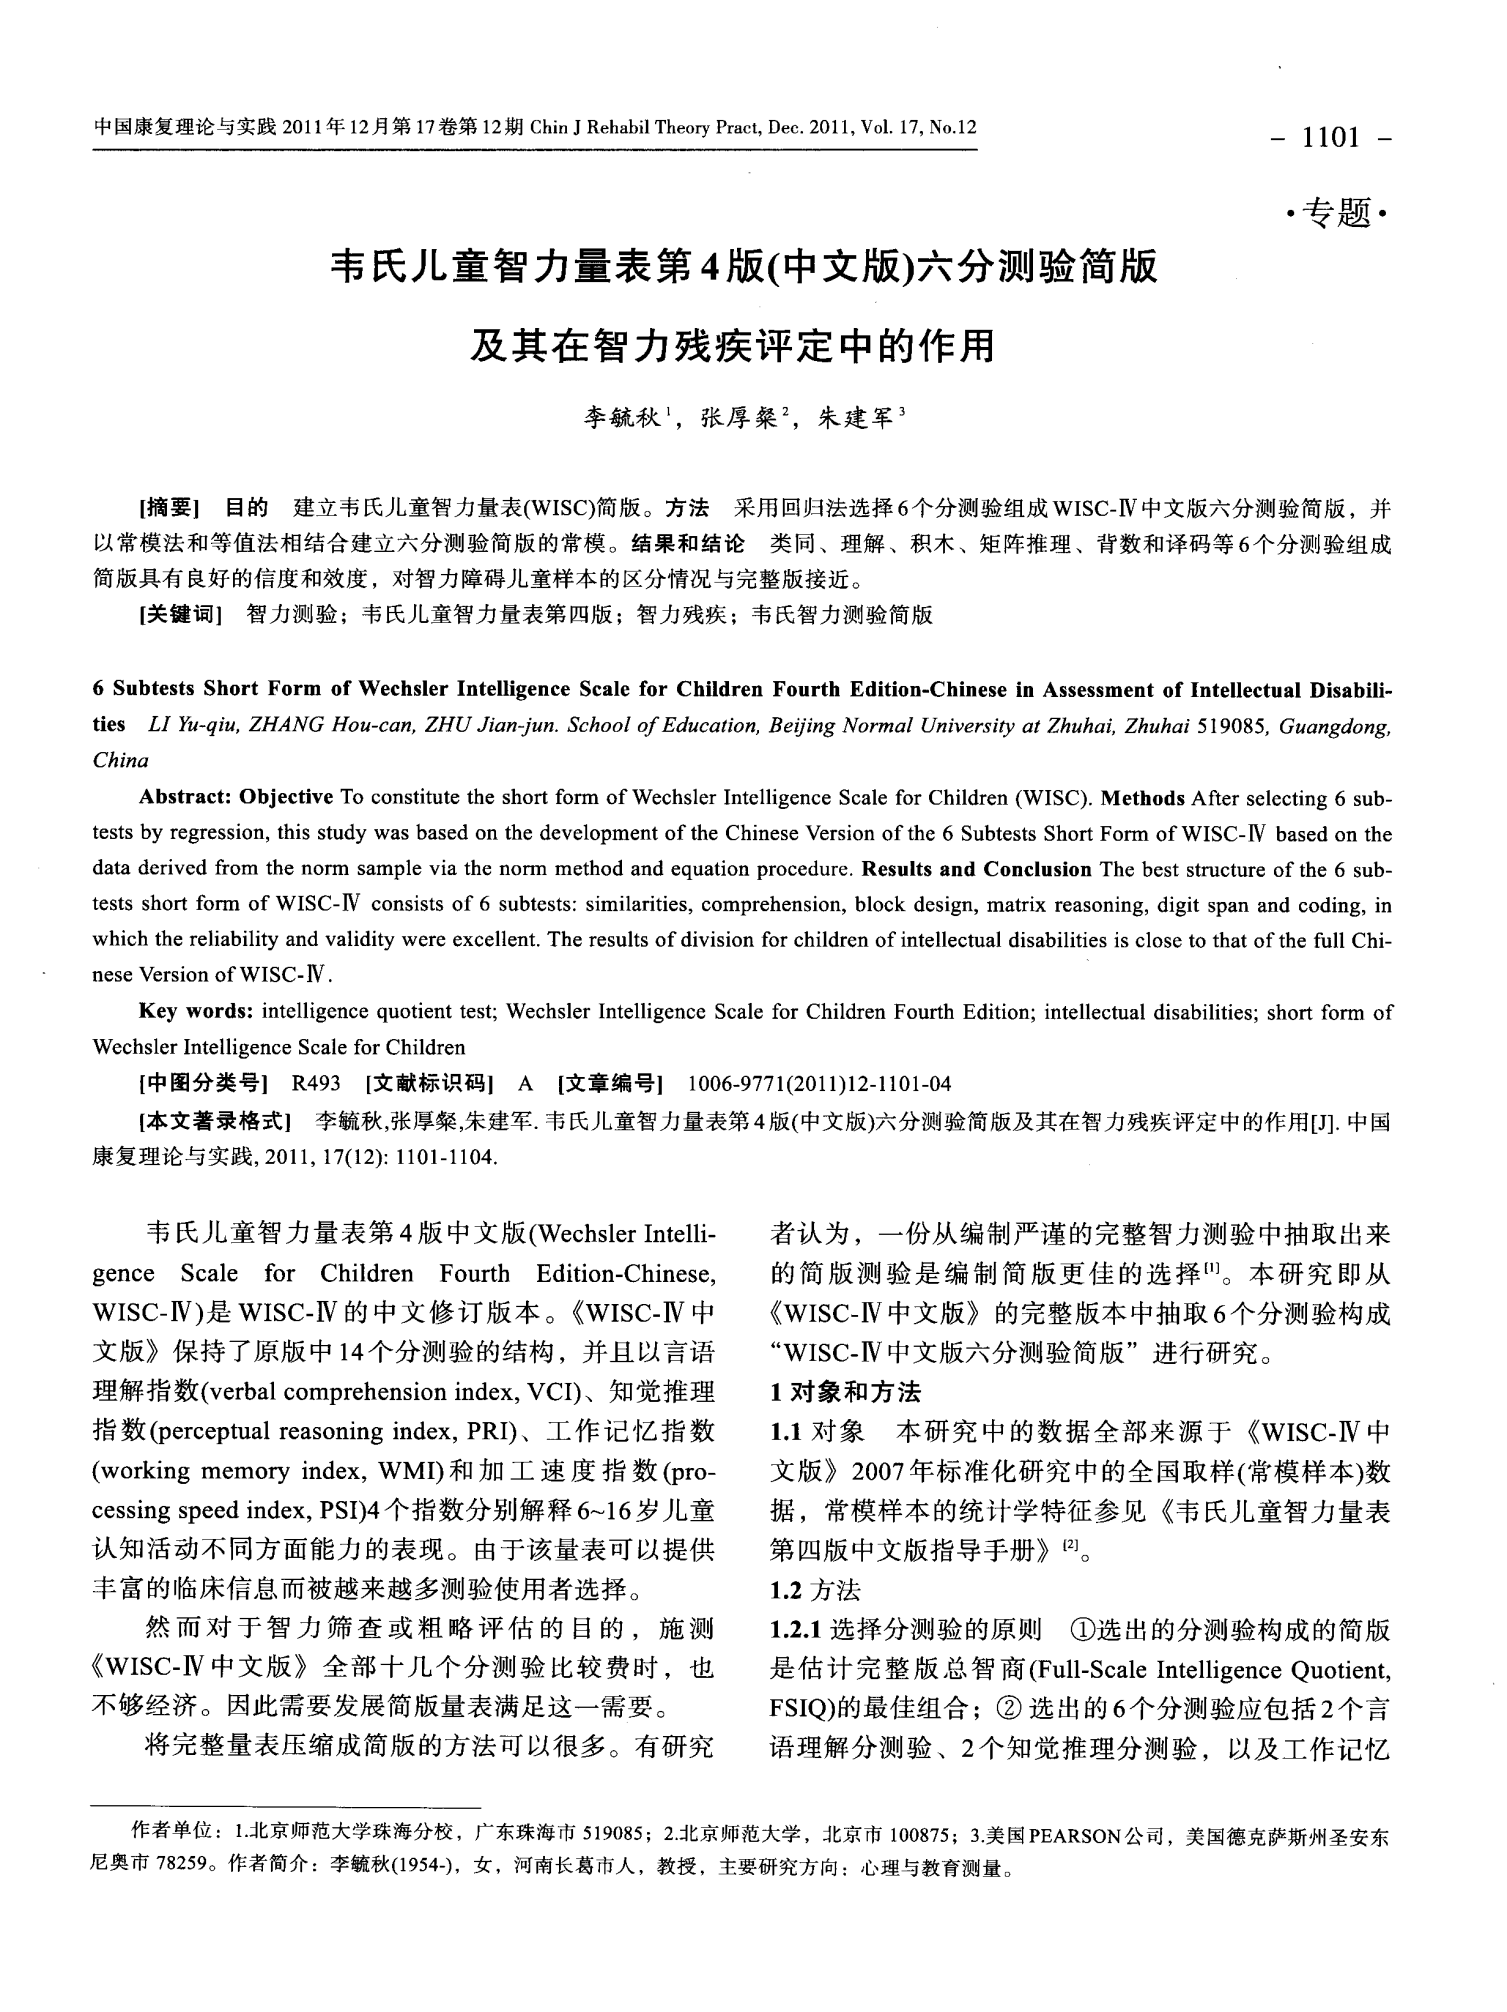 韦氏儿童智力量表第4版(中文版)六分测验简版及其在智力残疾评定中的作用